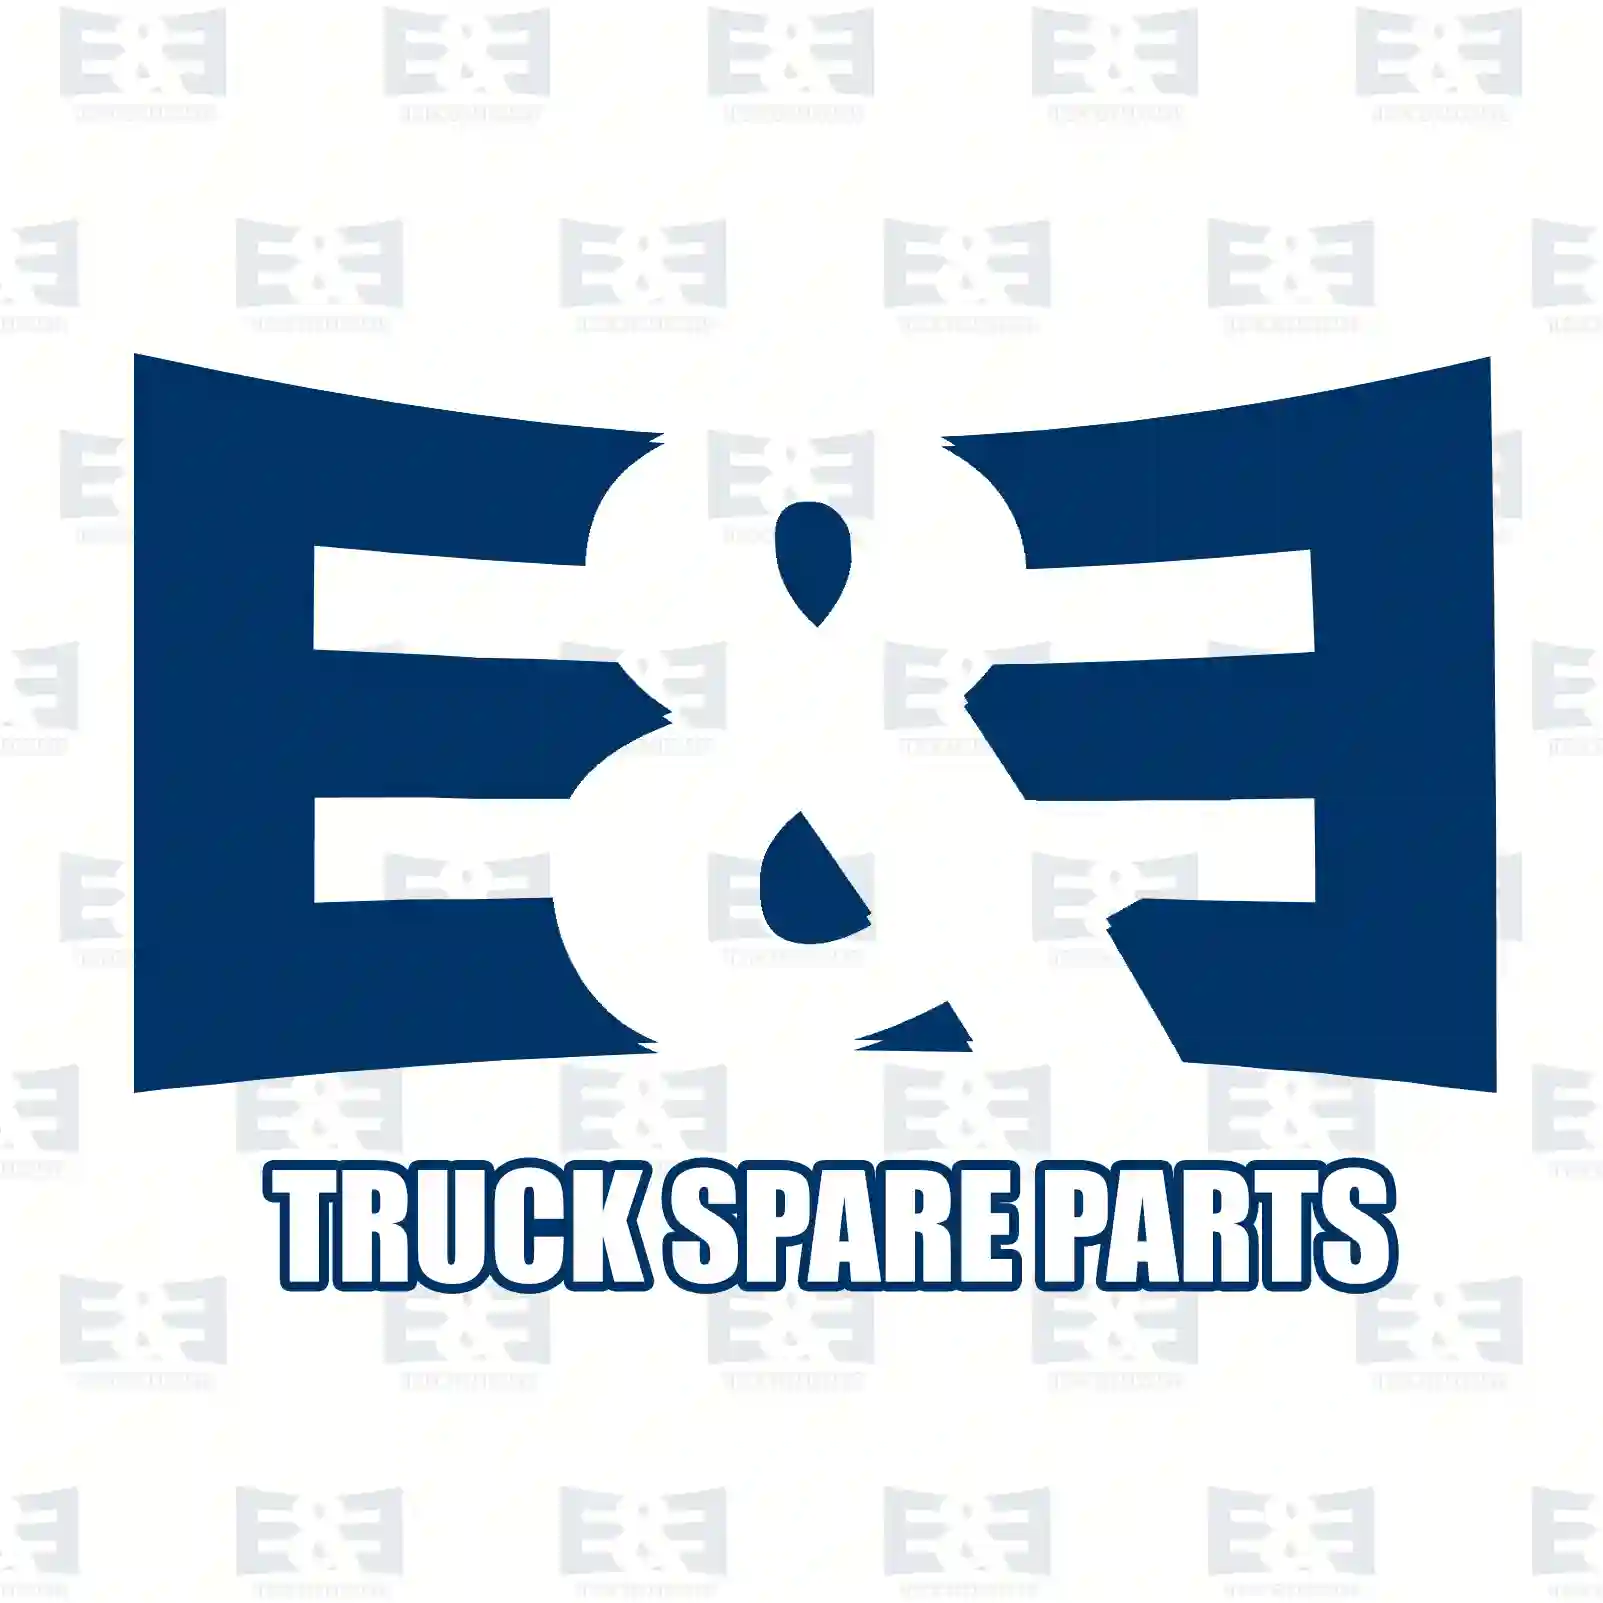 Oil cooler, 2E2209187, 3661800865, 3661801165, 3661803865 ||  2E2209187 E&E Truck Spare Parts | Truck Spare Parts, Auotomotive Spare Parts Oil cooler, 2E2209187, 3661800865, 3661801165, 3661803865 ||  2E2209187 E&E Truck Spare Parts | Truck Spare Parts, Auotomotive Spare Parts